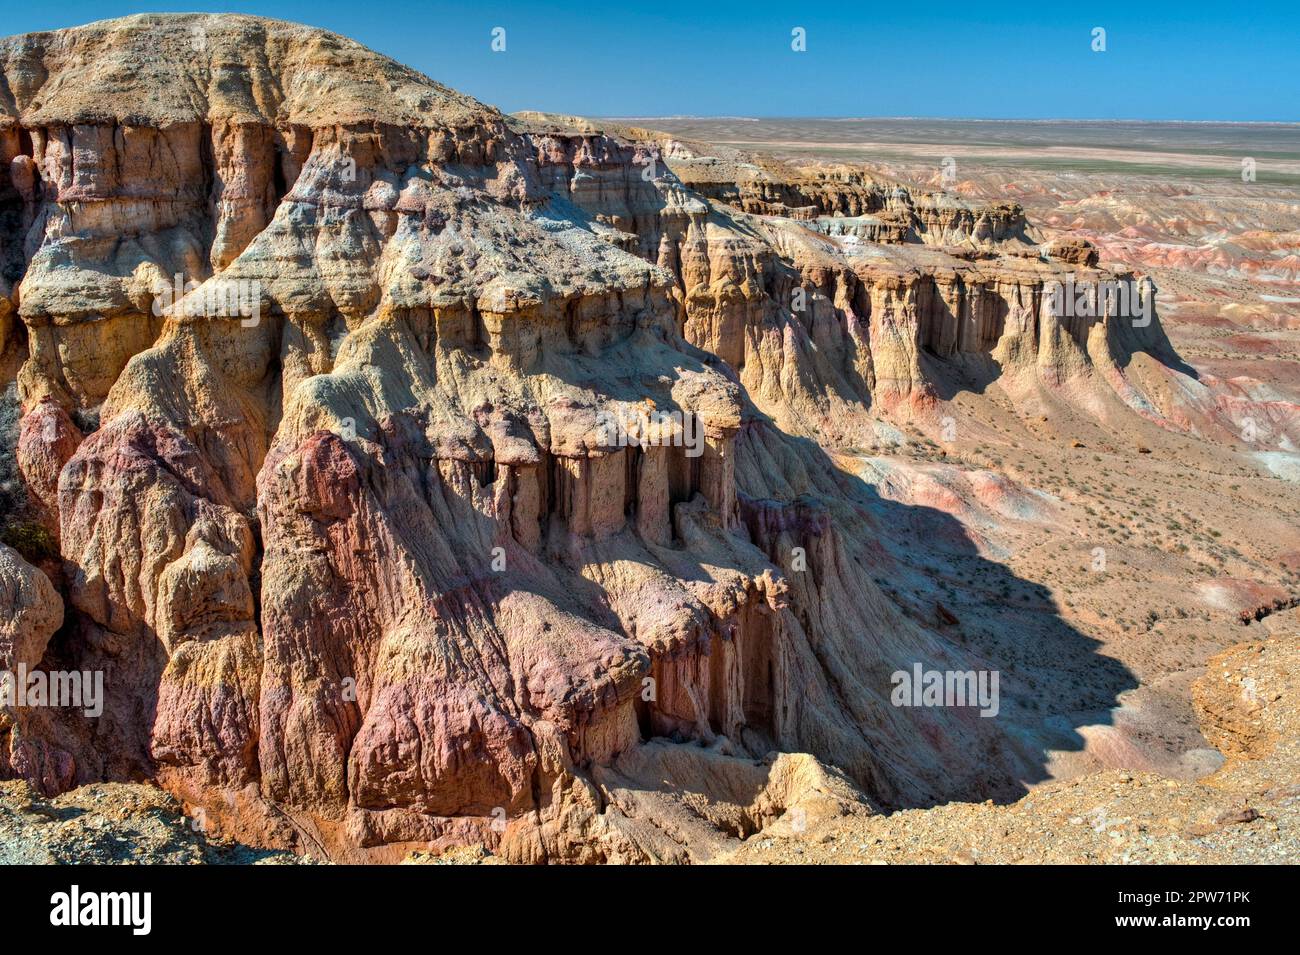 Ein Canyon mit schroffen und steilen Felswänden in der Wüste Gobi, Mongolei, Zentralasien Stock Photo